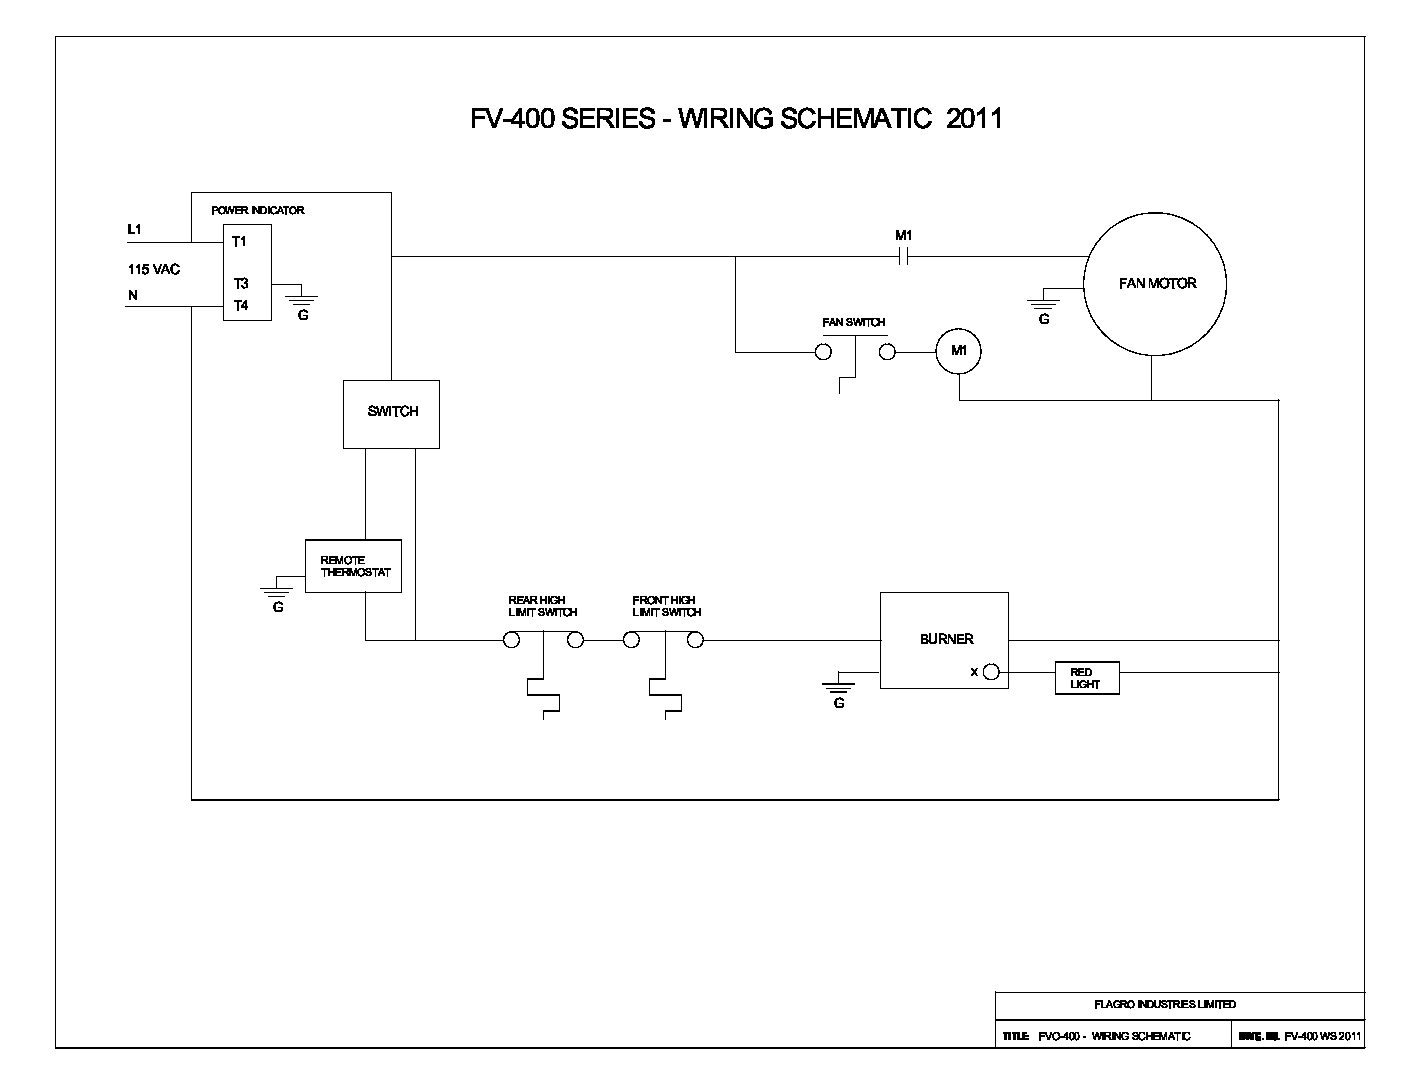 Flagro FVO-400 Wiring Schematics